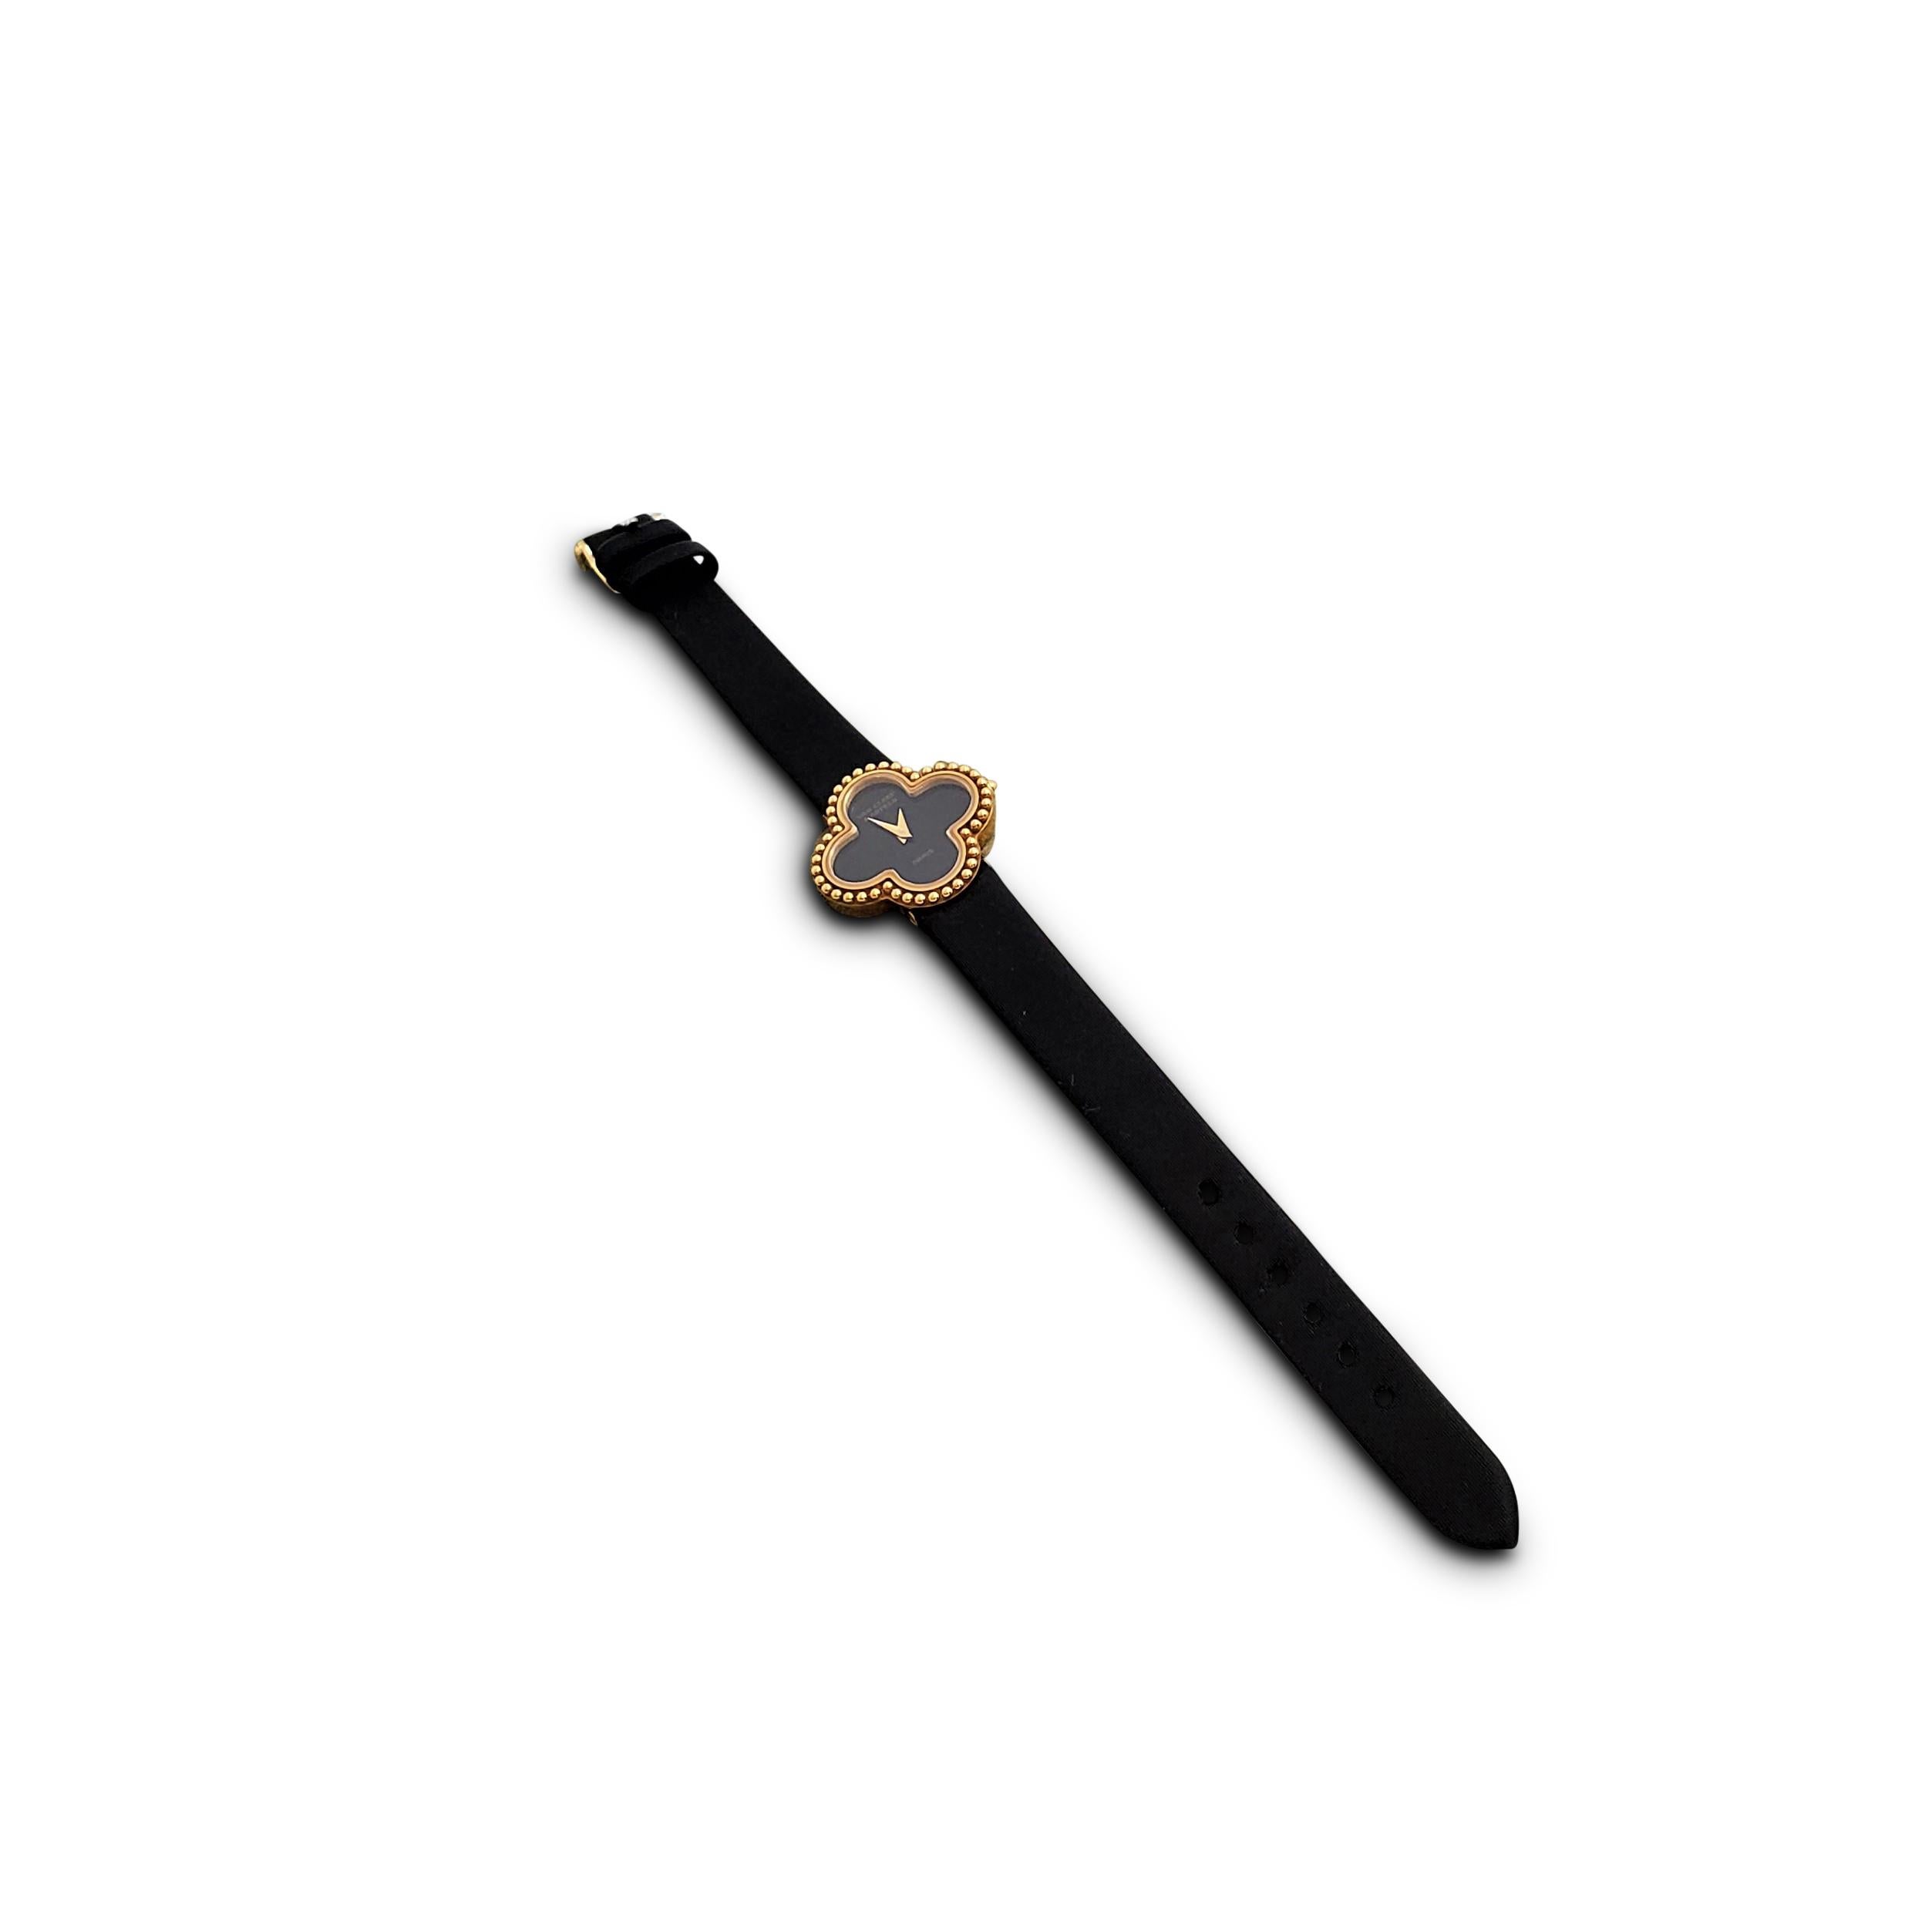 Uncut Van Cleef & Arpels 'Alhambra' Onyx Dial Watch, Small Model